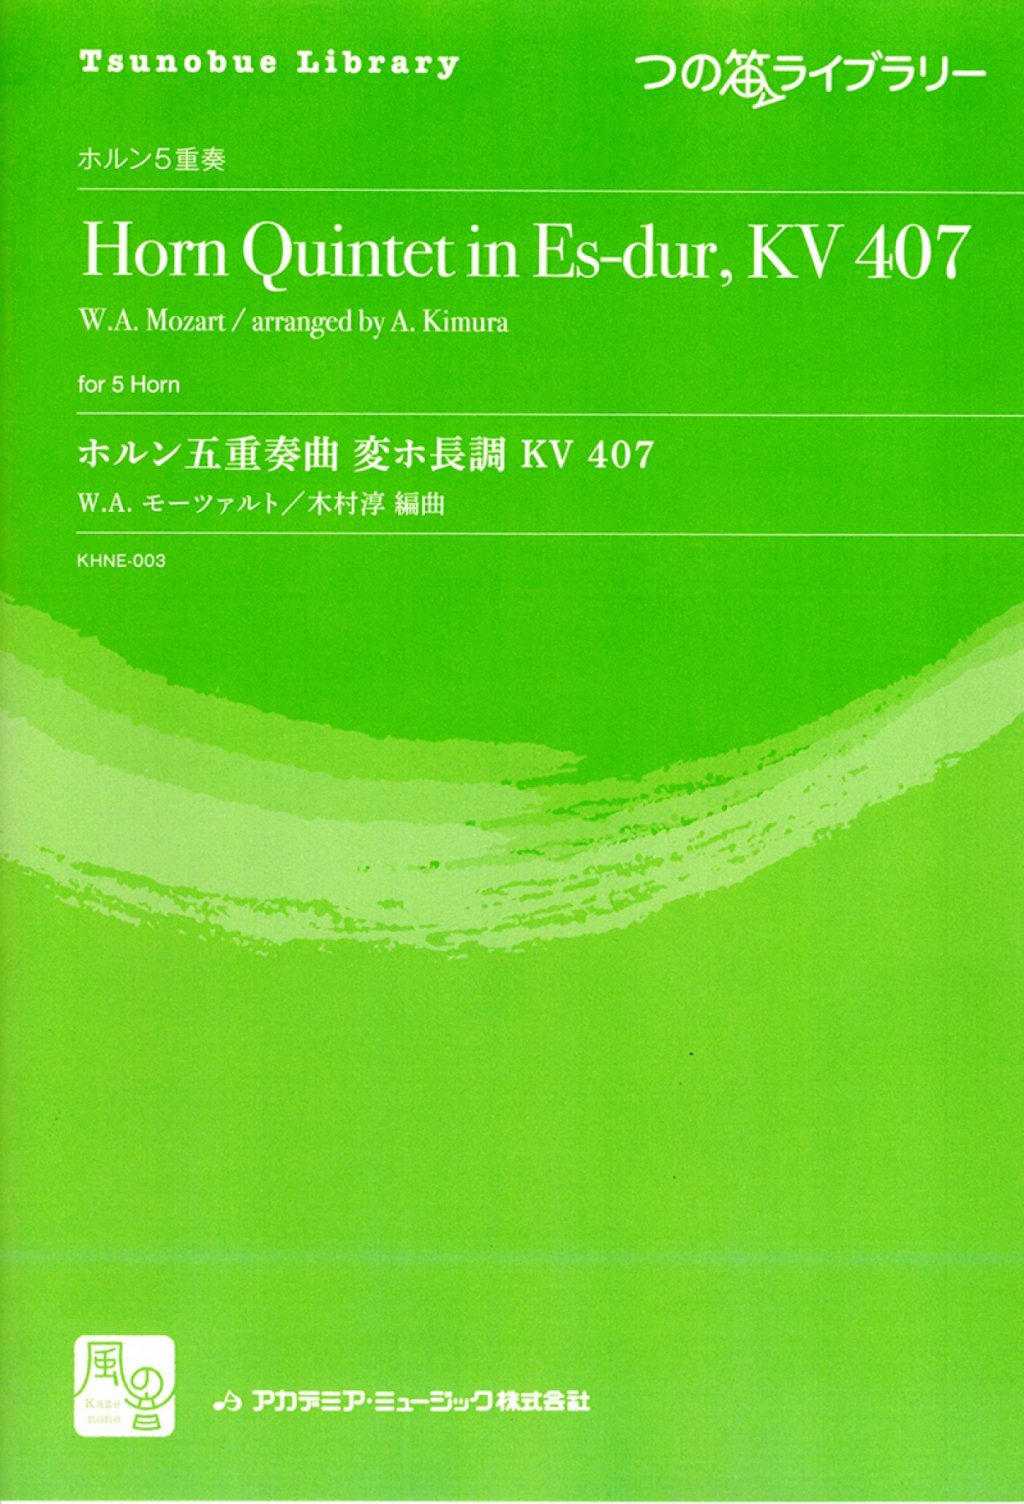 「つの笛ライブラリー／ホルン五重奏曲 変ホ長調 KV407 (HR5重奏)」 画像 1